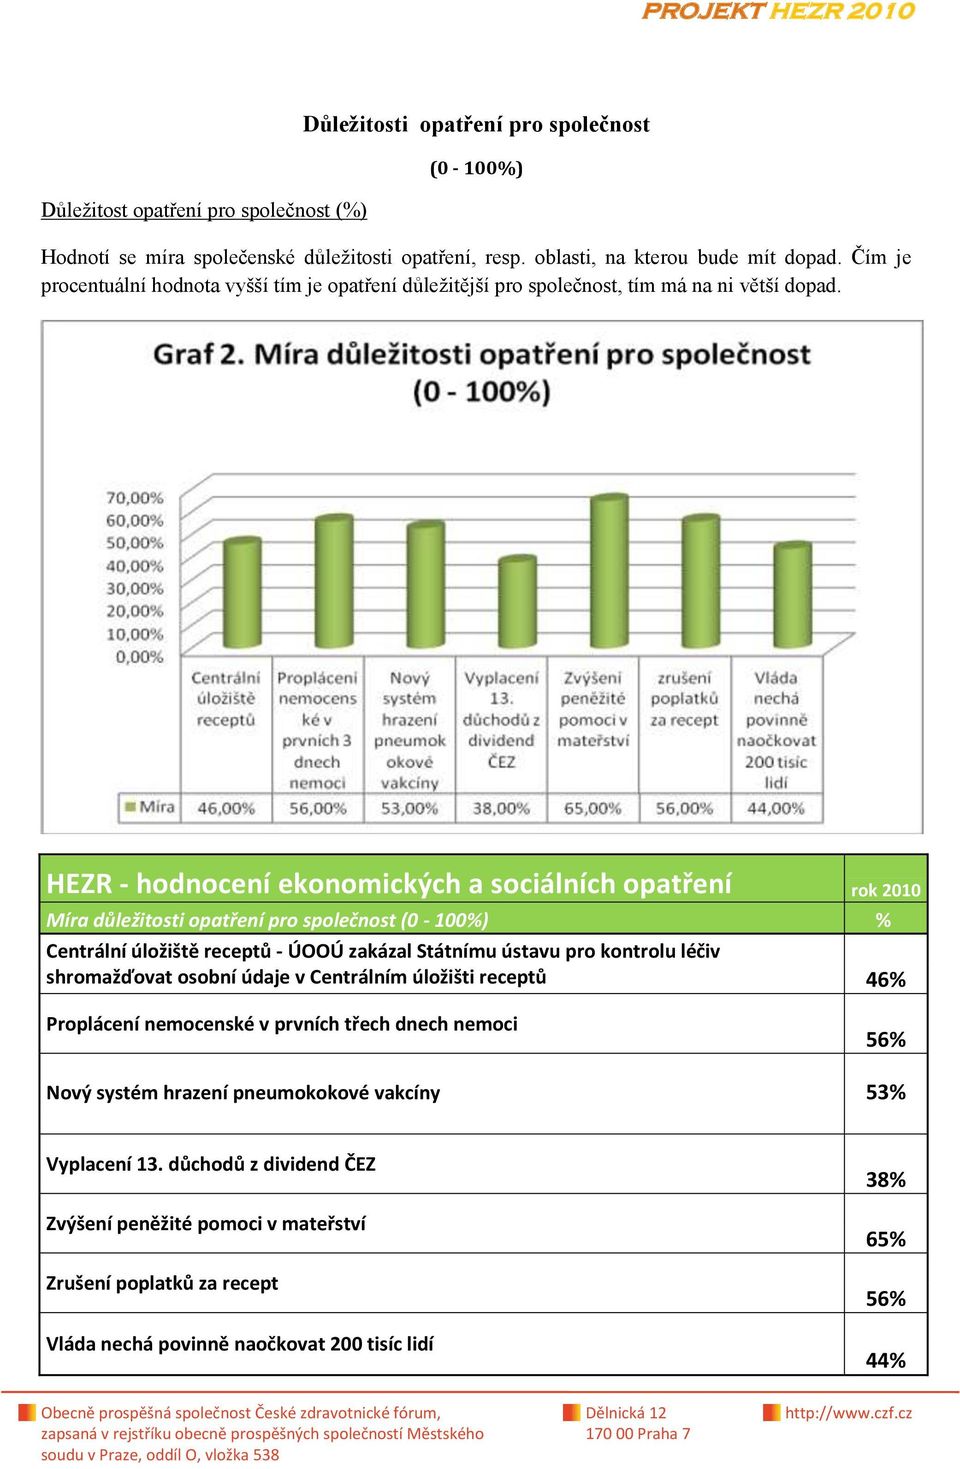 HEZR - hodnocení ekonomických a sociálních opatření rok 2010 Míra důležitosti opatření pro společnost (0-100%) % Centrální úložiště receptů - ÚOOÚ zakázal Státnímu ústavu pro kontrolu léčiv